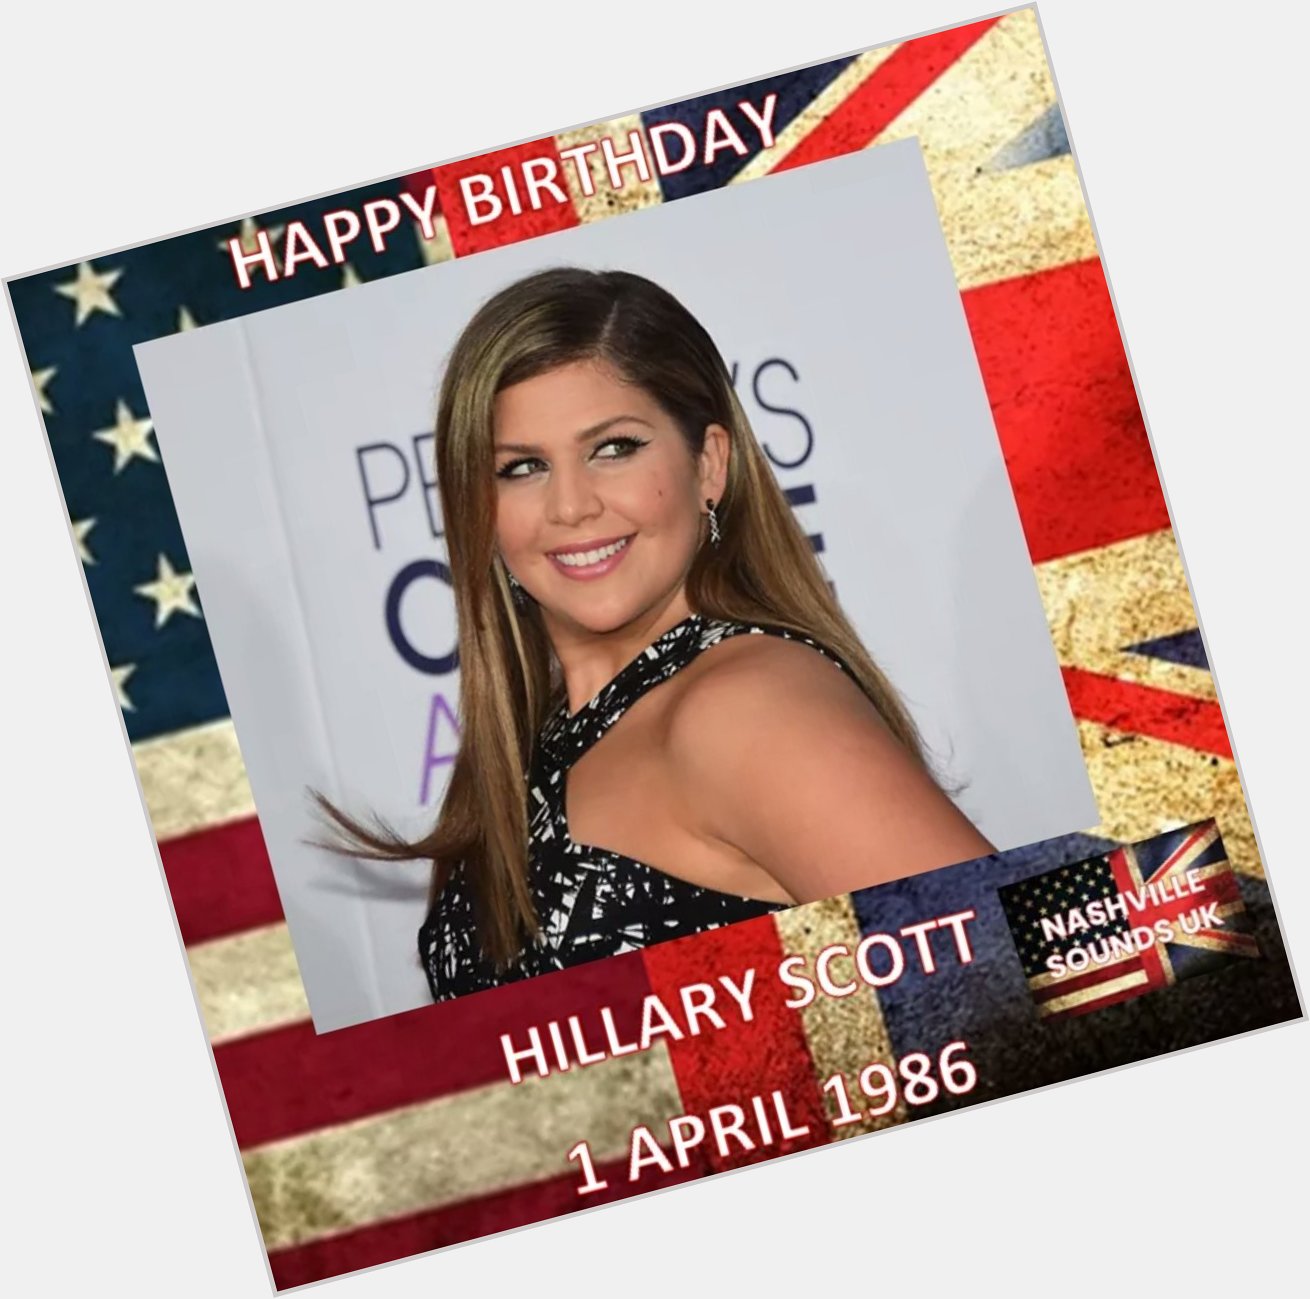 Happy Birthday to Hillary Scott. Scott bis one third of the very successful 